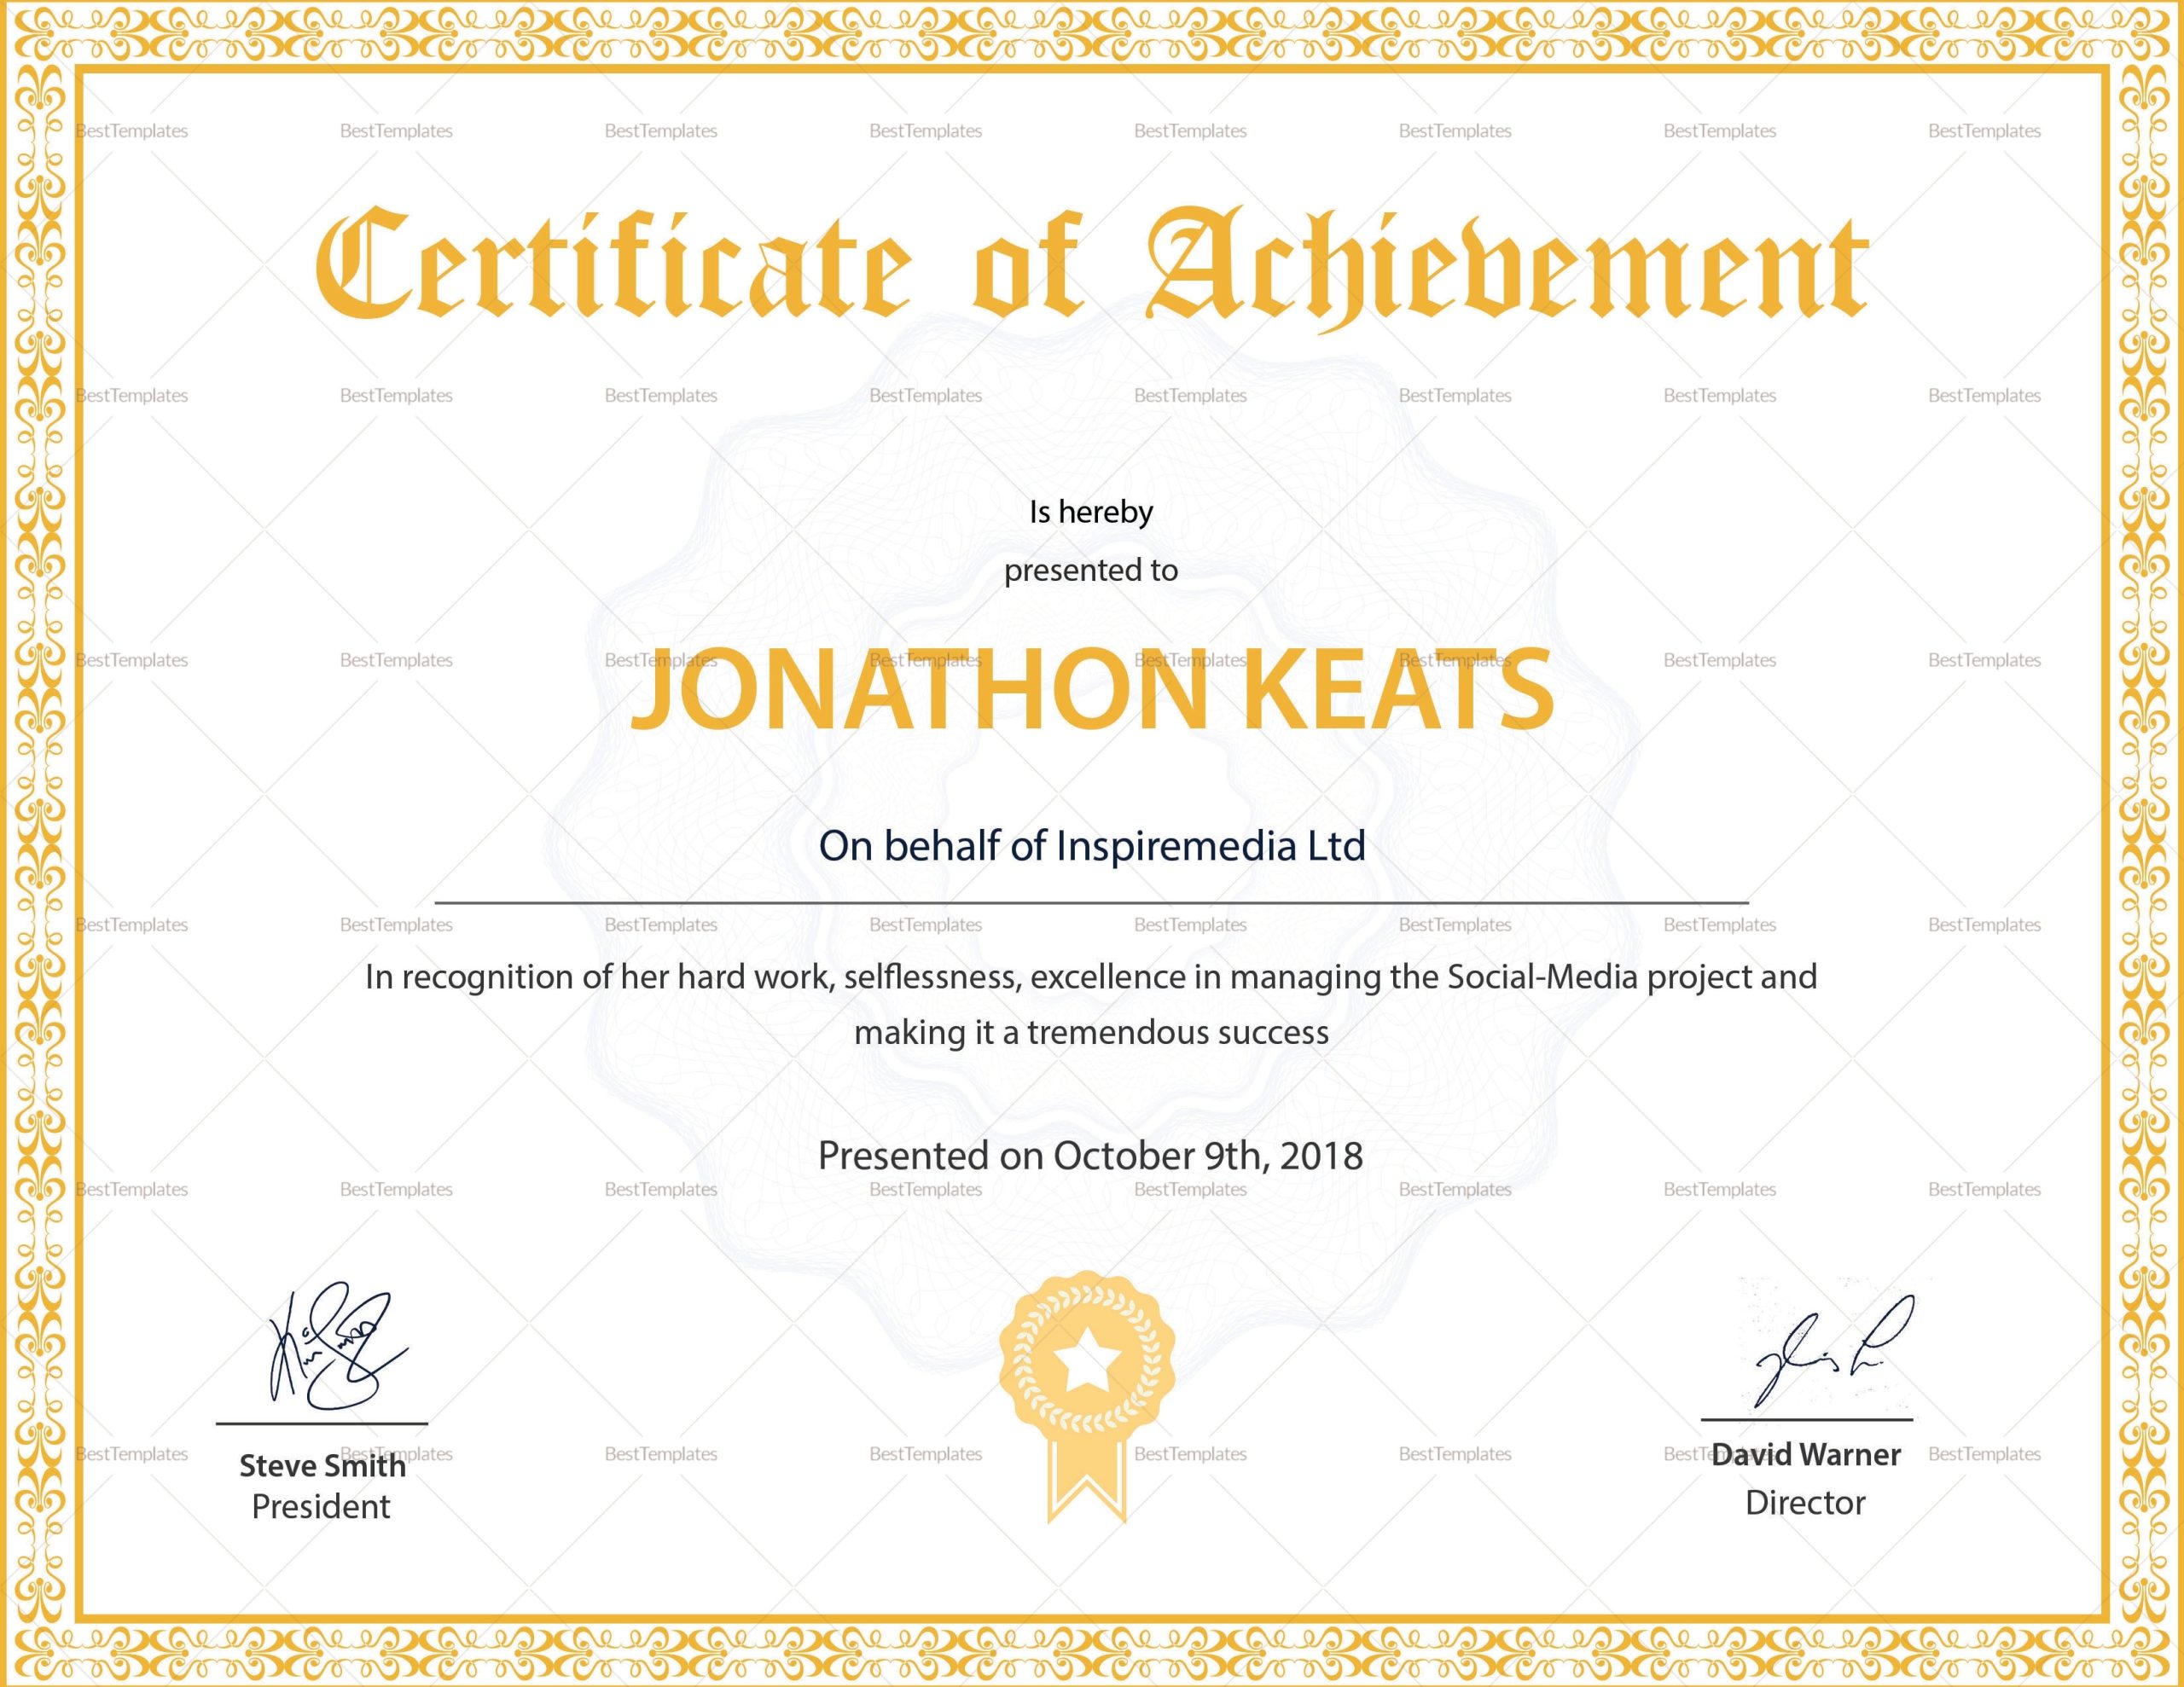 Certificate Of Achievement Design Template In Psd, Word With Certificate Of Attainment Template